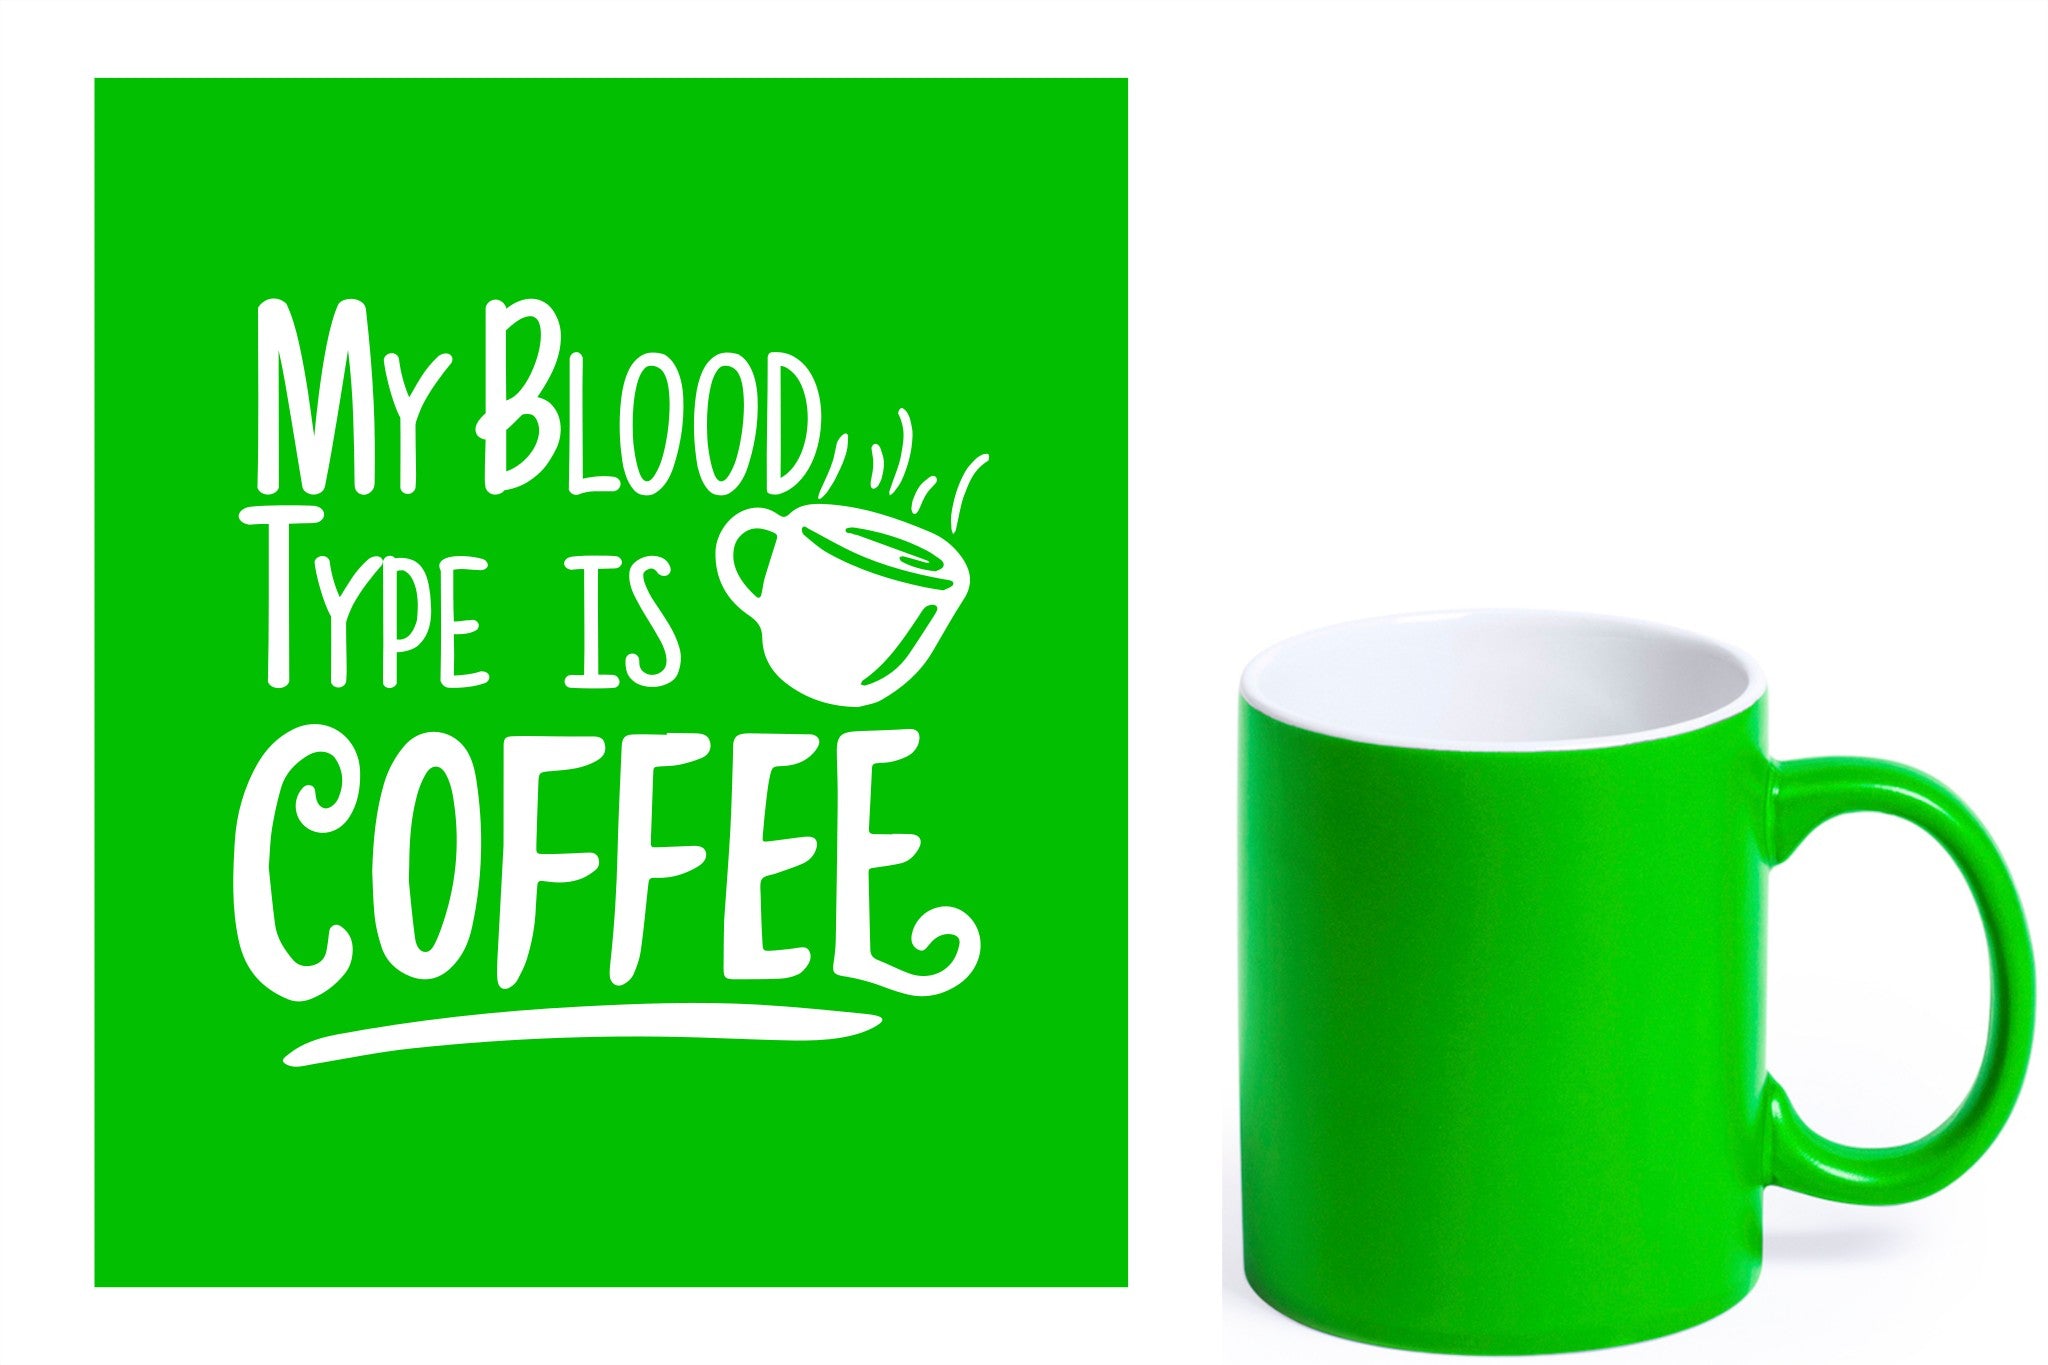 groene keramische mok met witte gravure  'My blood type is coffee'.